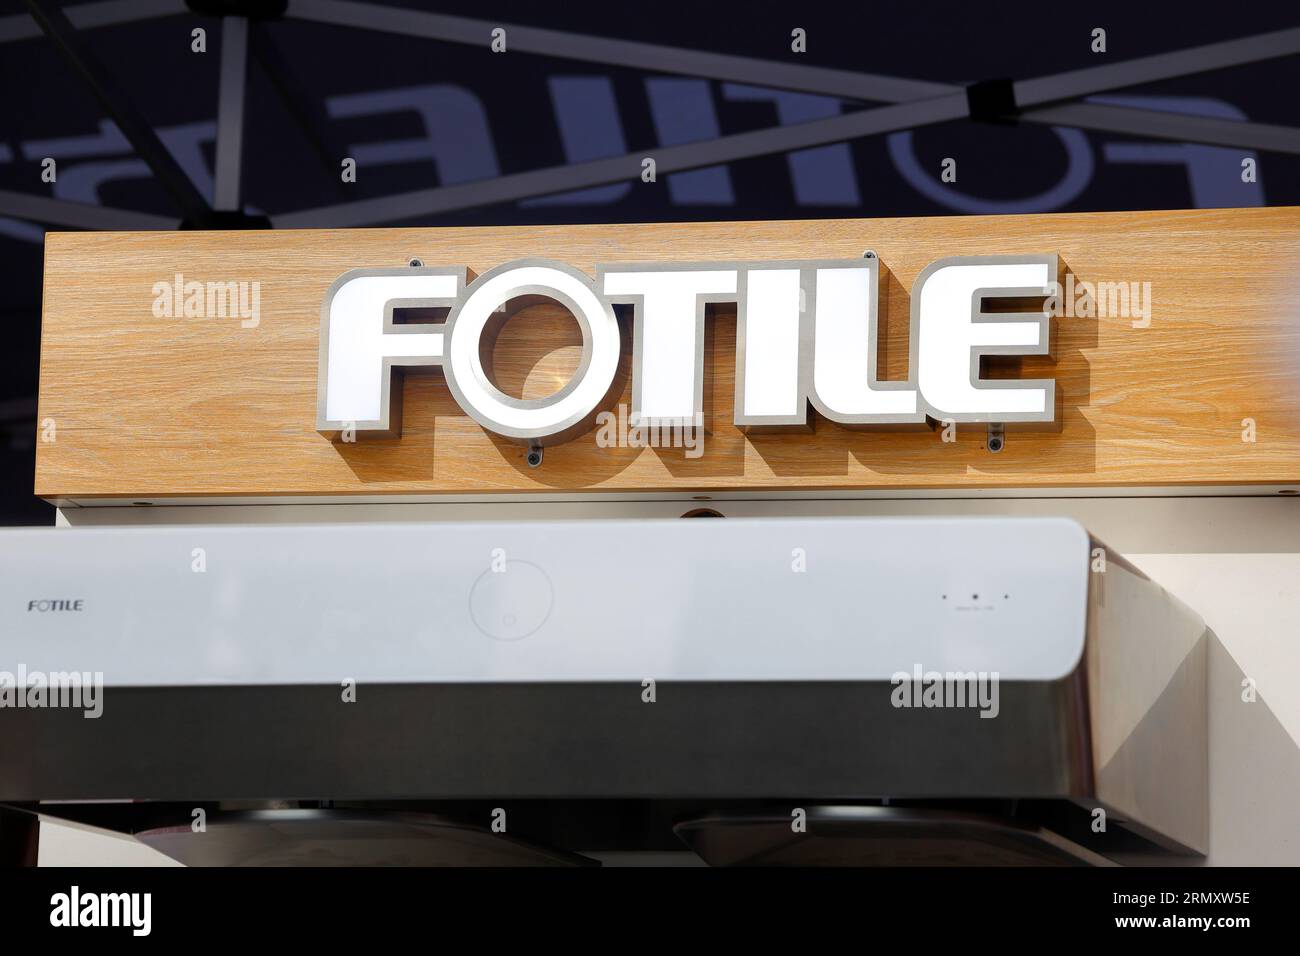 Signalétique pour Fotile, un appareil de cuisine de marque chinoise, et fabricant de hottes de cuisine dont le siège est à Ningbo, en Chine. Banque D'Images